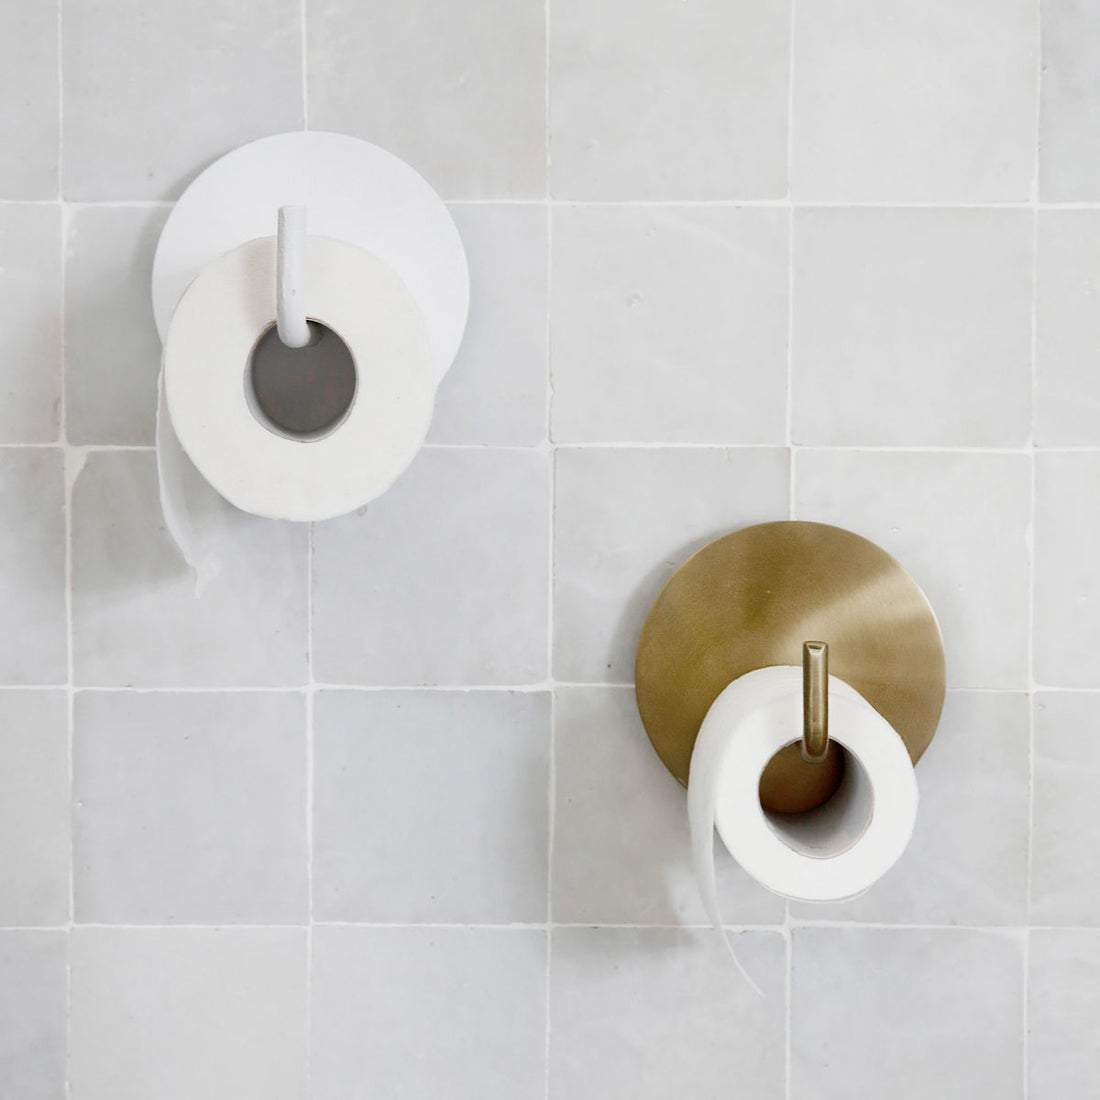 Hausarzt - Toilettenpapierhalter, Text, Messing - L: 12,5 cm, Dia: 13 cm